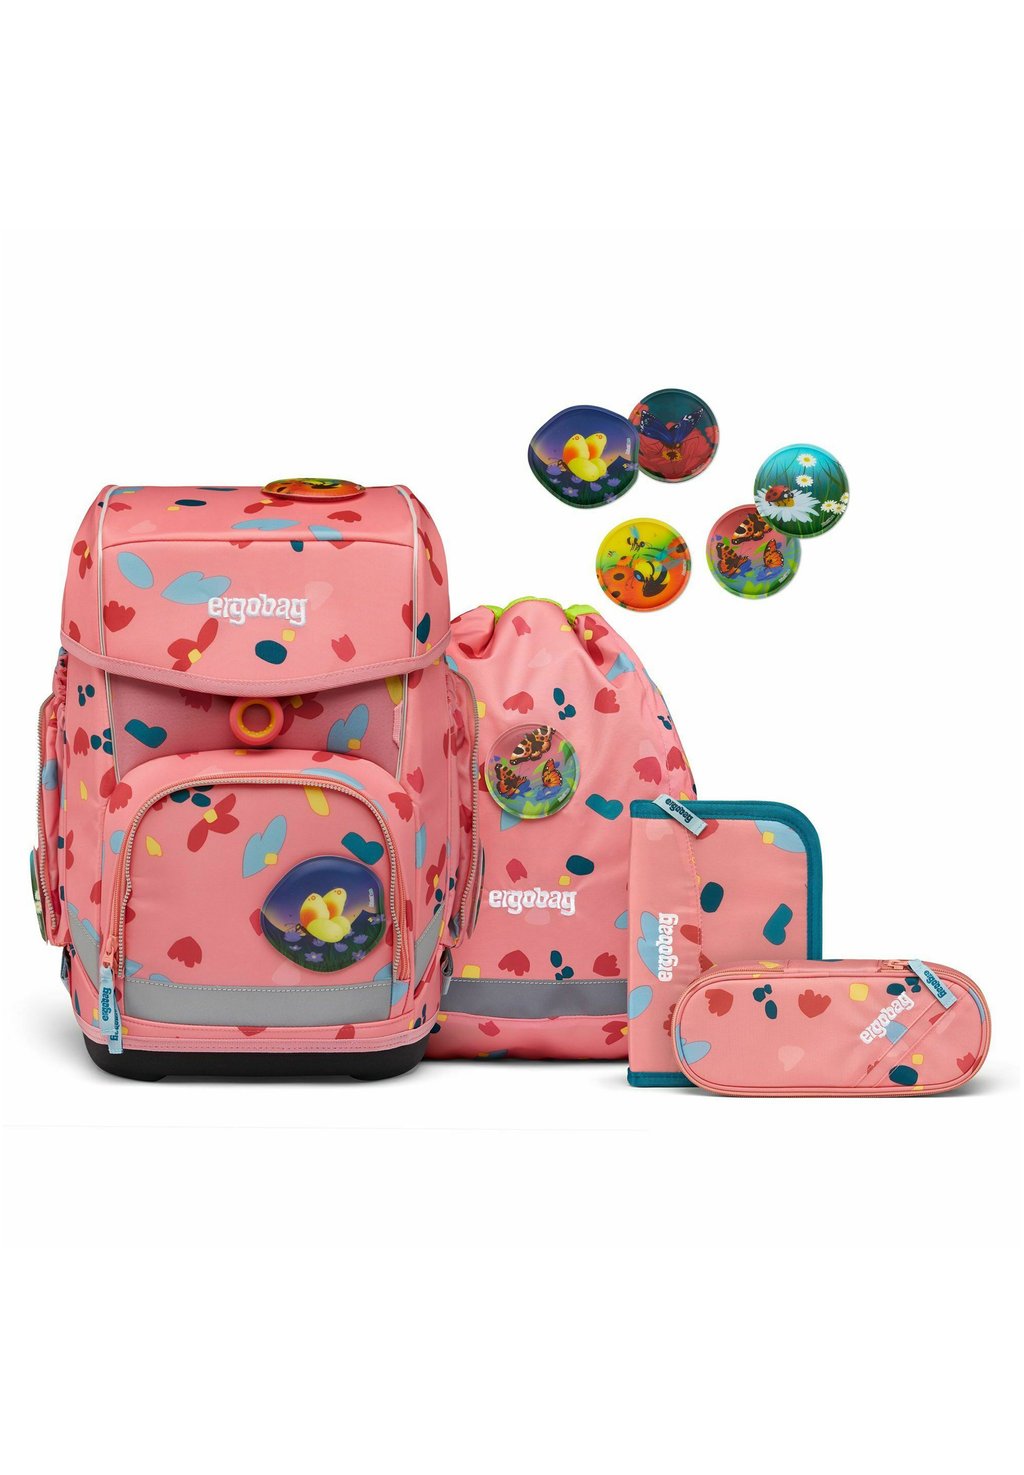 Комплект школьных сумок CUBO SET 5TLG INKL Ergobag, цвет zitronenfaltbär